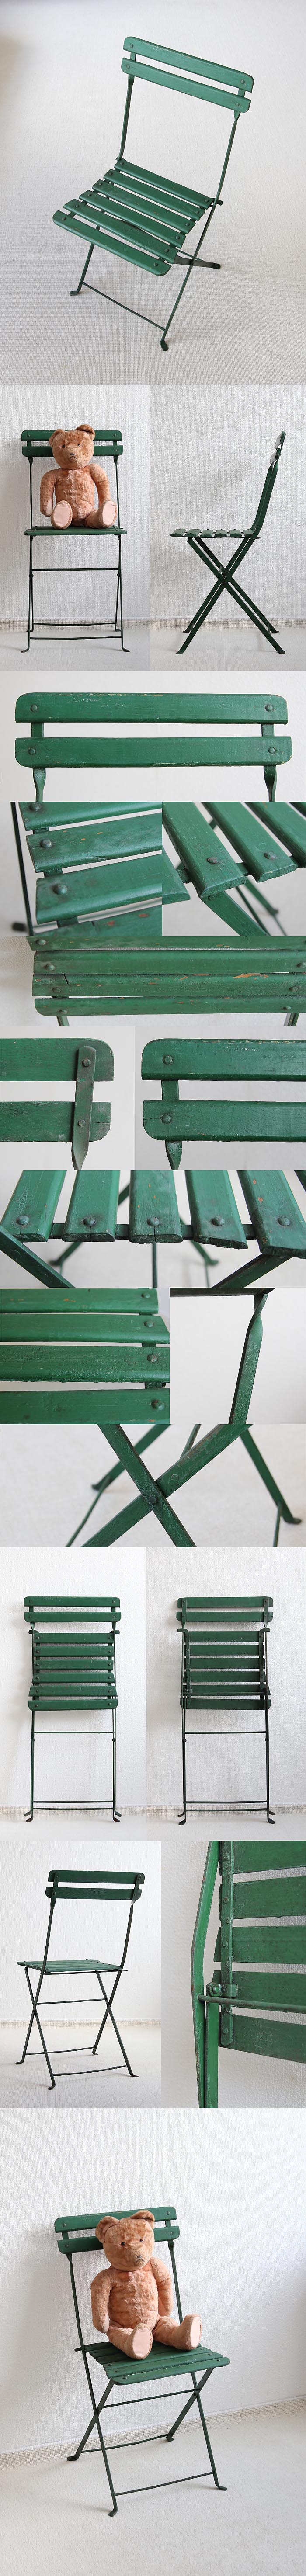 フランス アンティーク フォールディングチェア 木製椅子 折りたたみ式 ペイント家具「ガーデンチェア」P-379